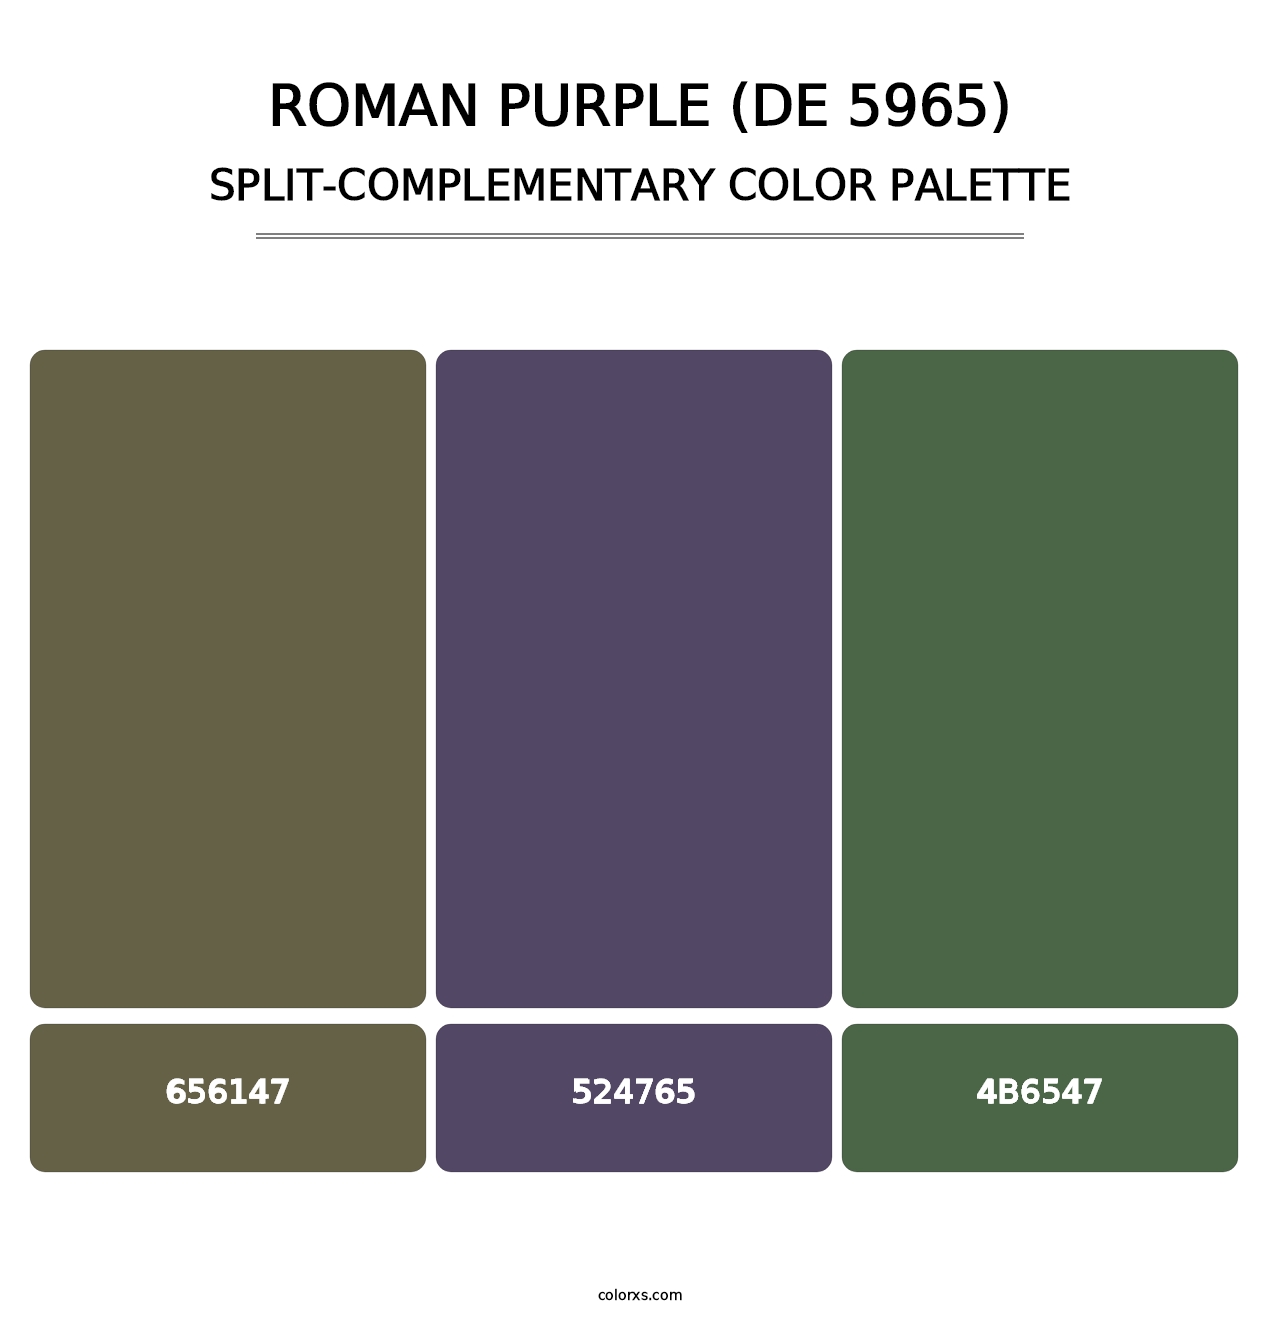 Roman Purple (DE 5965) - Split-Complementary Color Palette